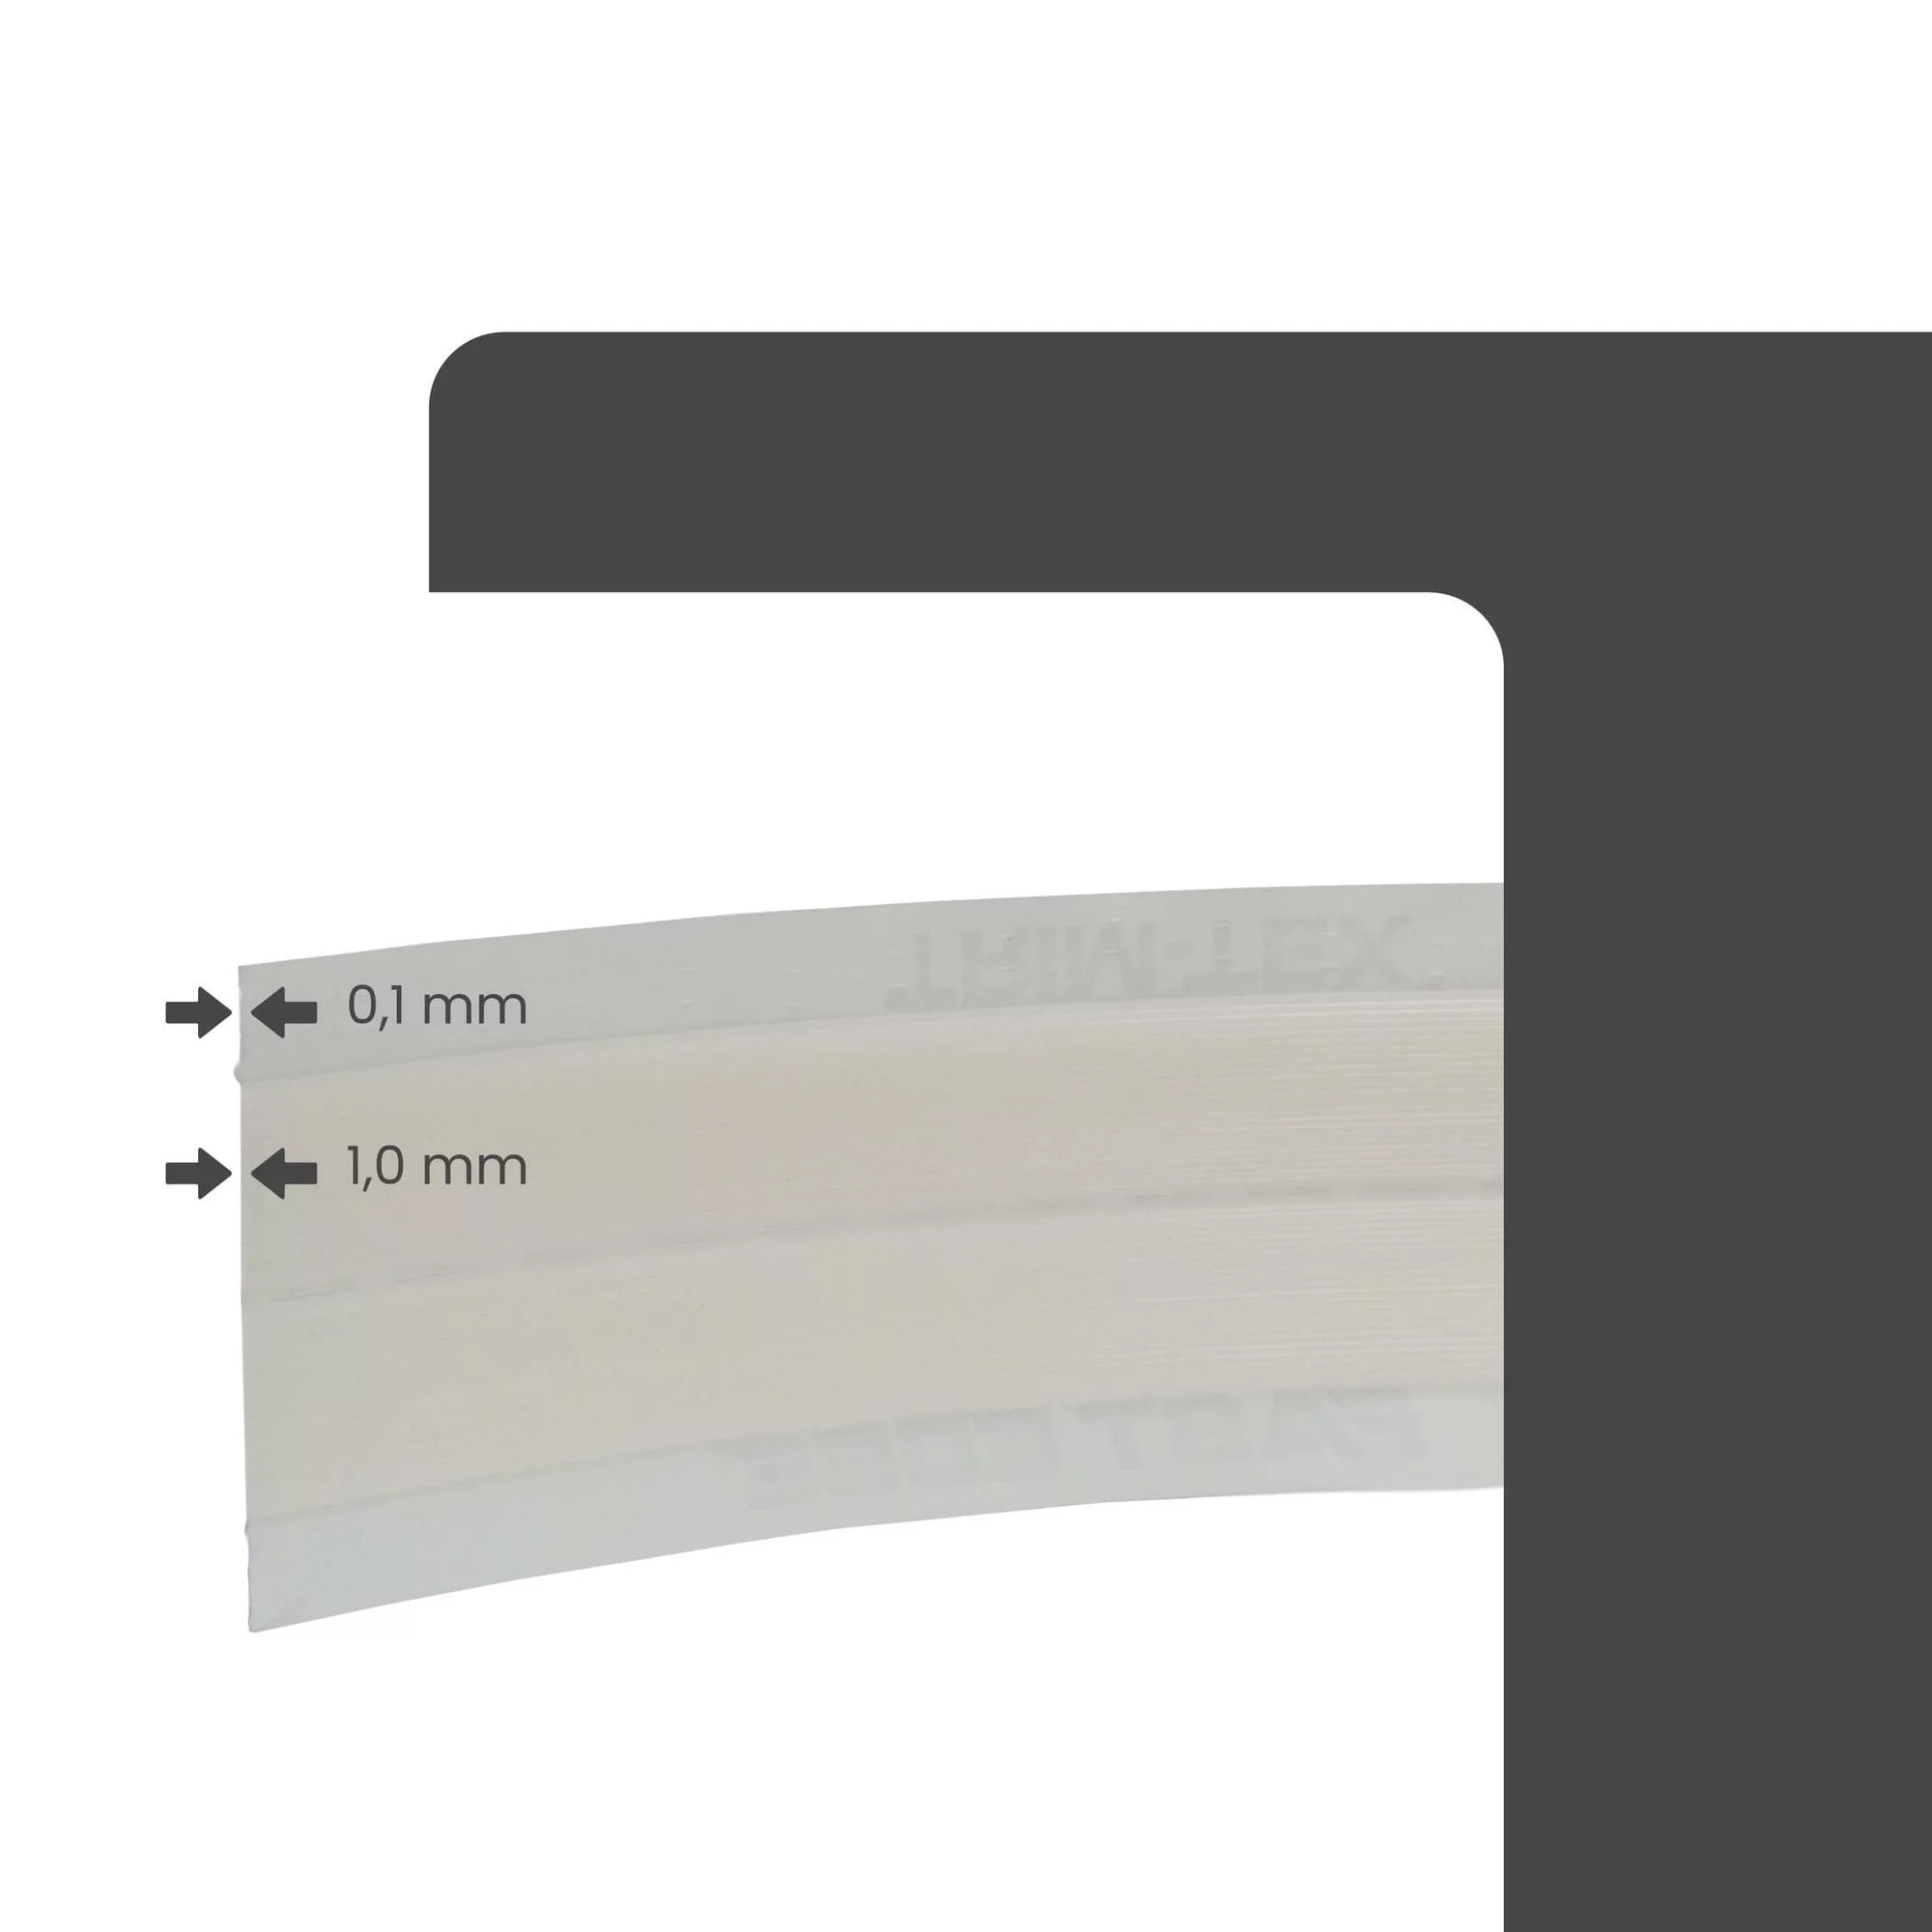 papierkantenprofil-fast-edge-roll-30.4m-rolle-weiss